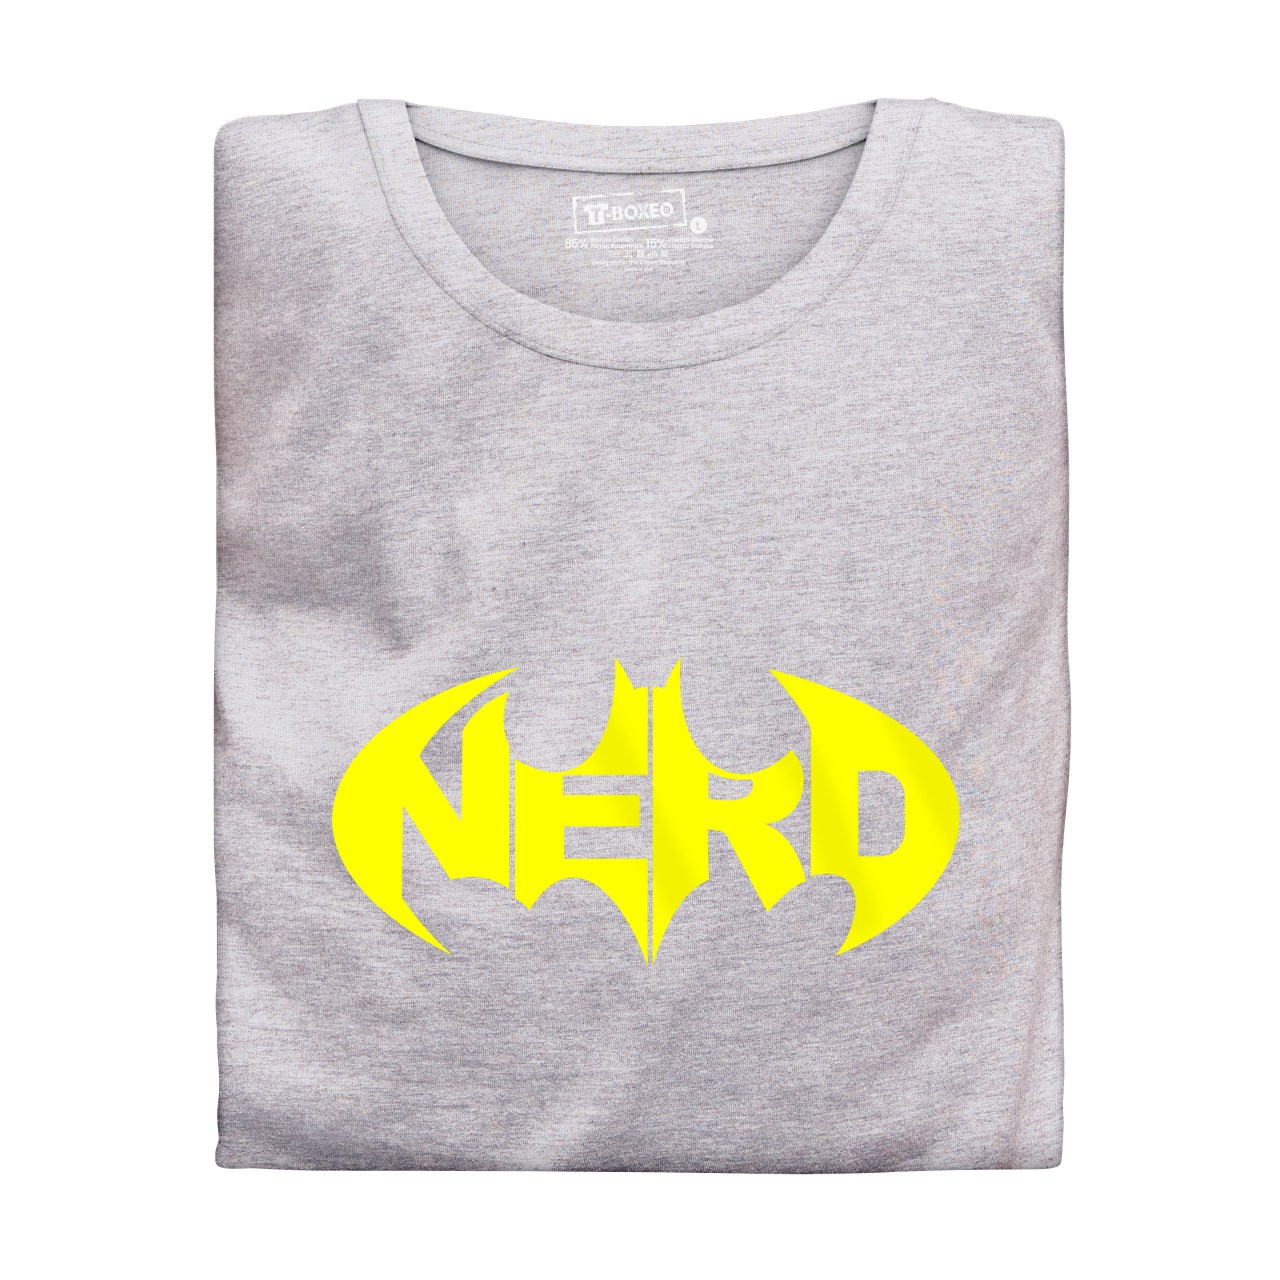 Pánské tričko s potiskem “Nerd”